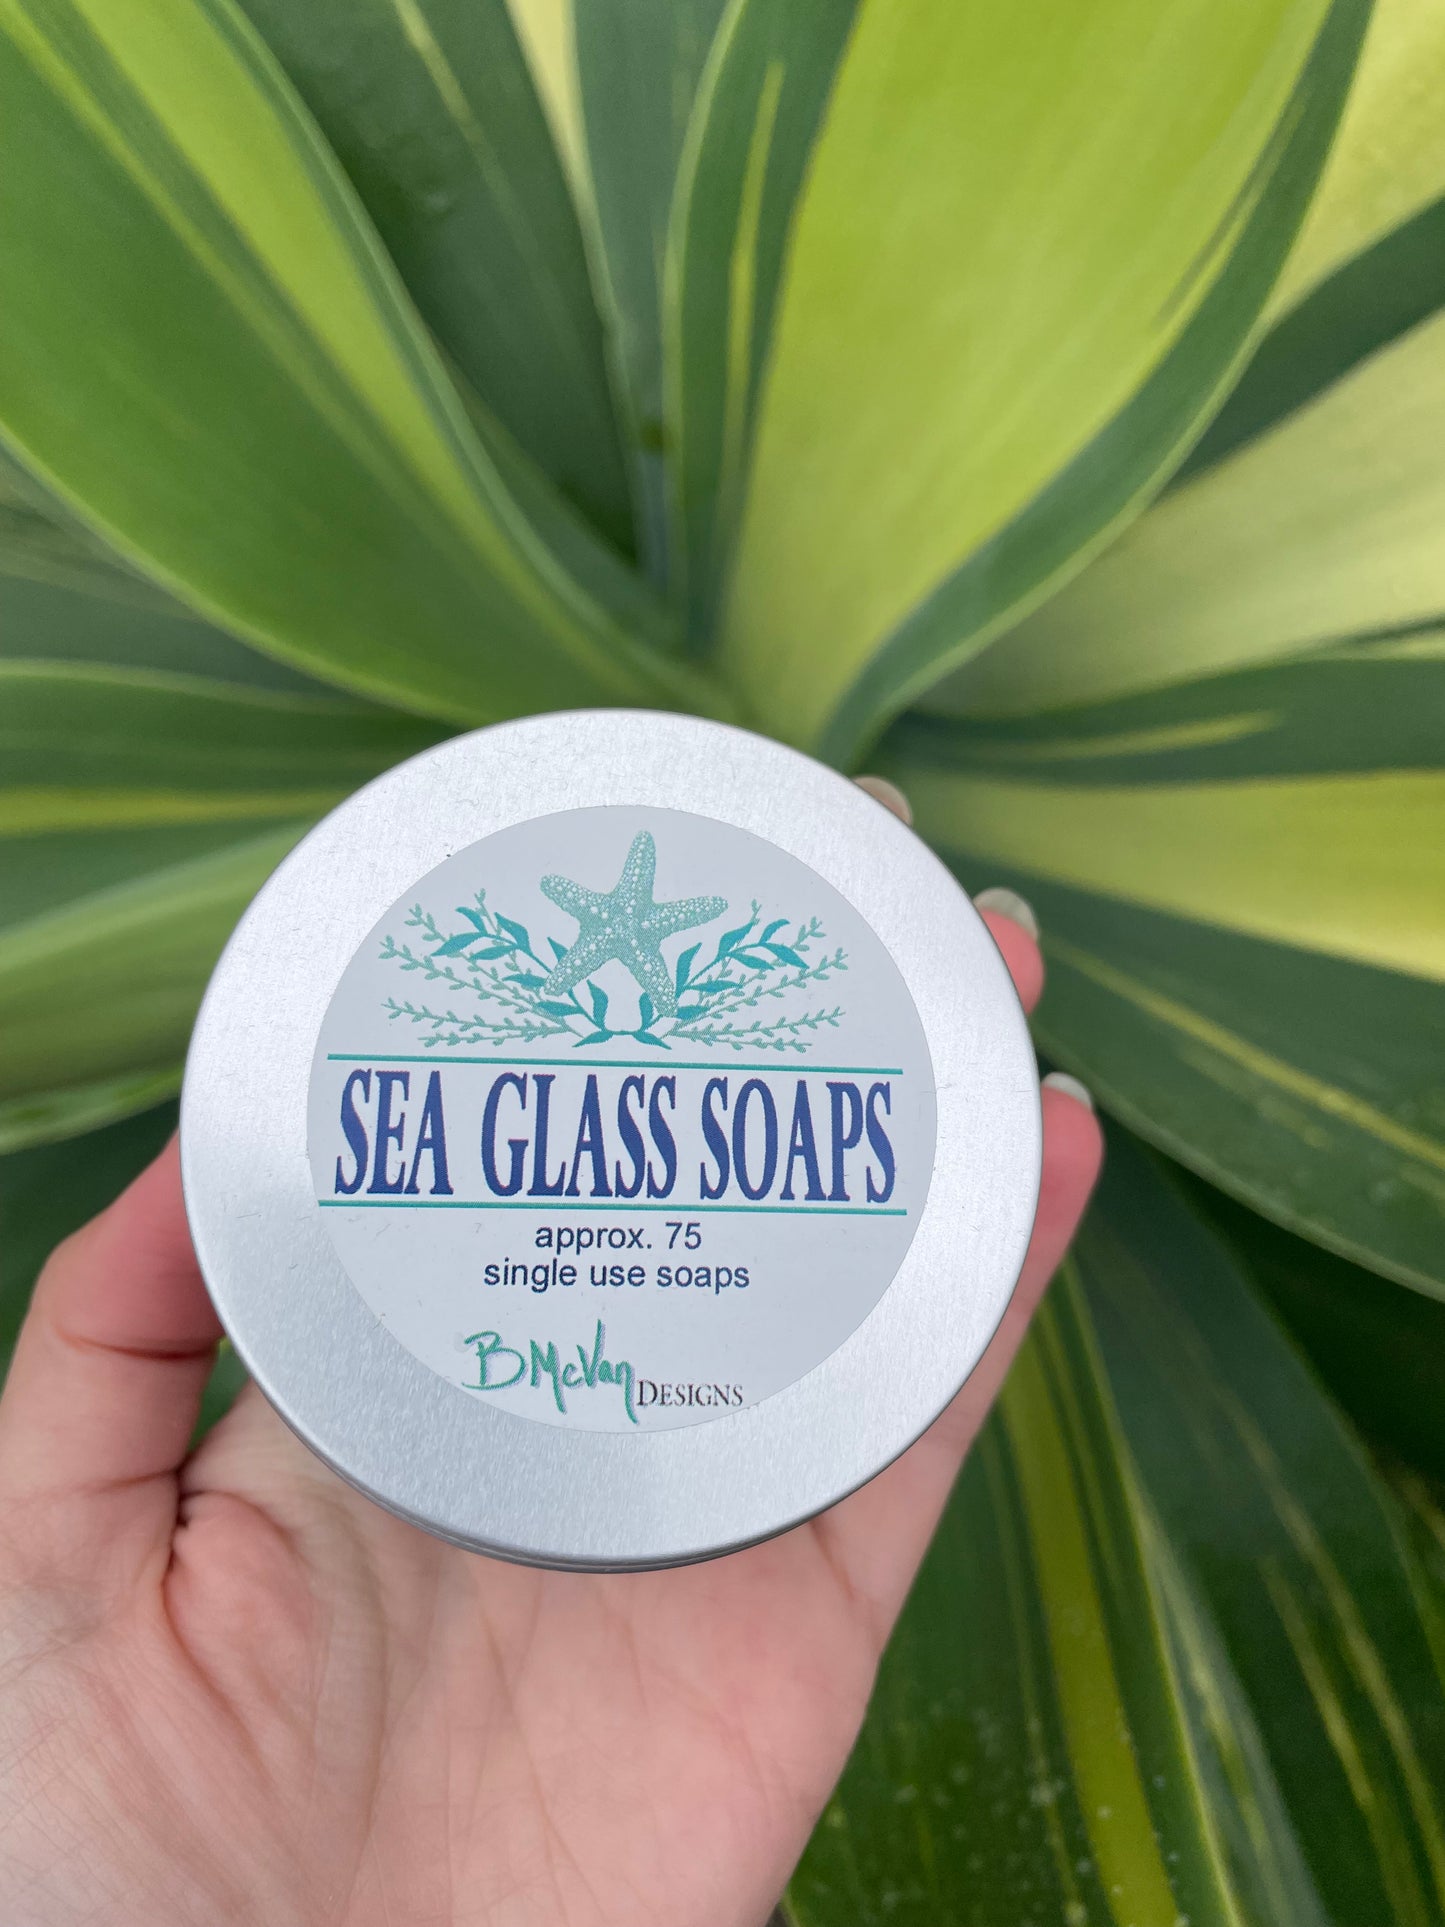 Sea glass soap